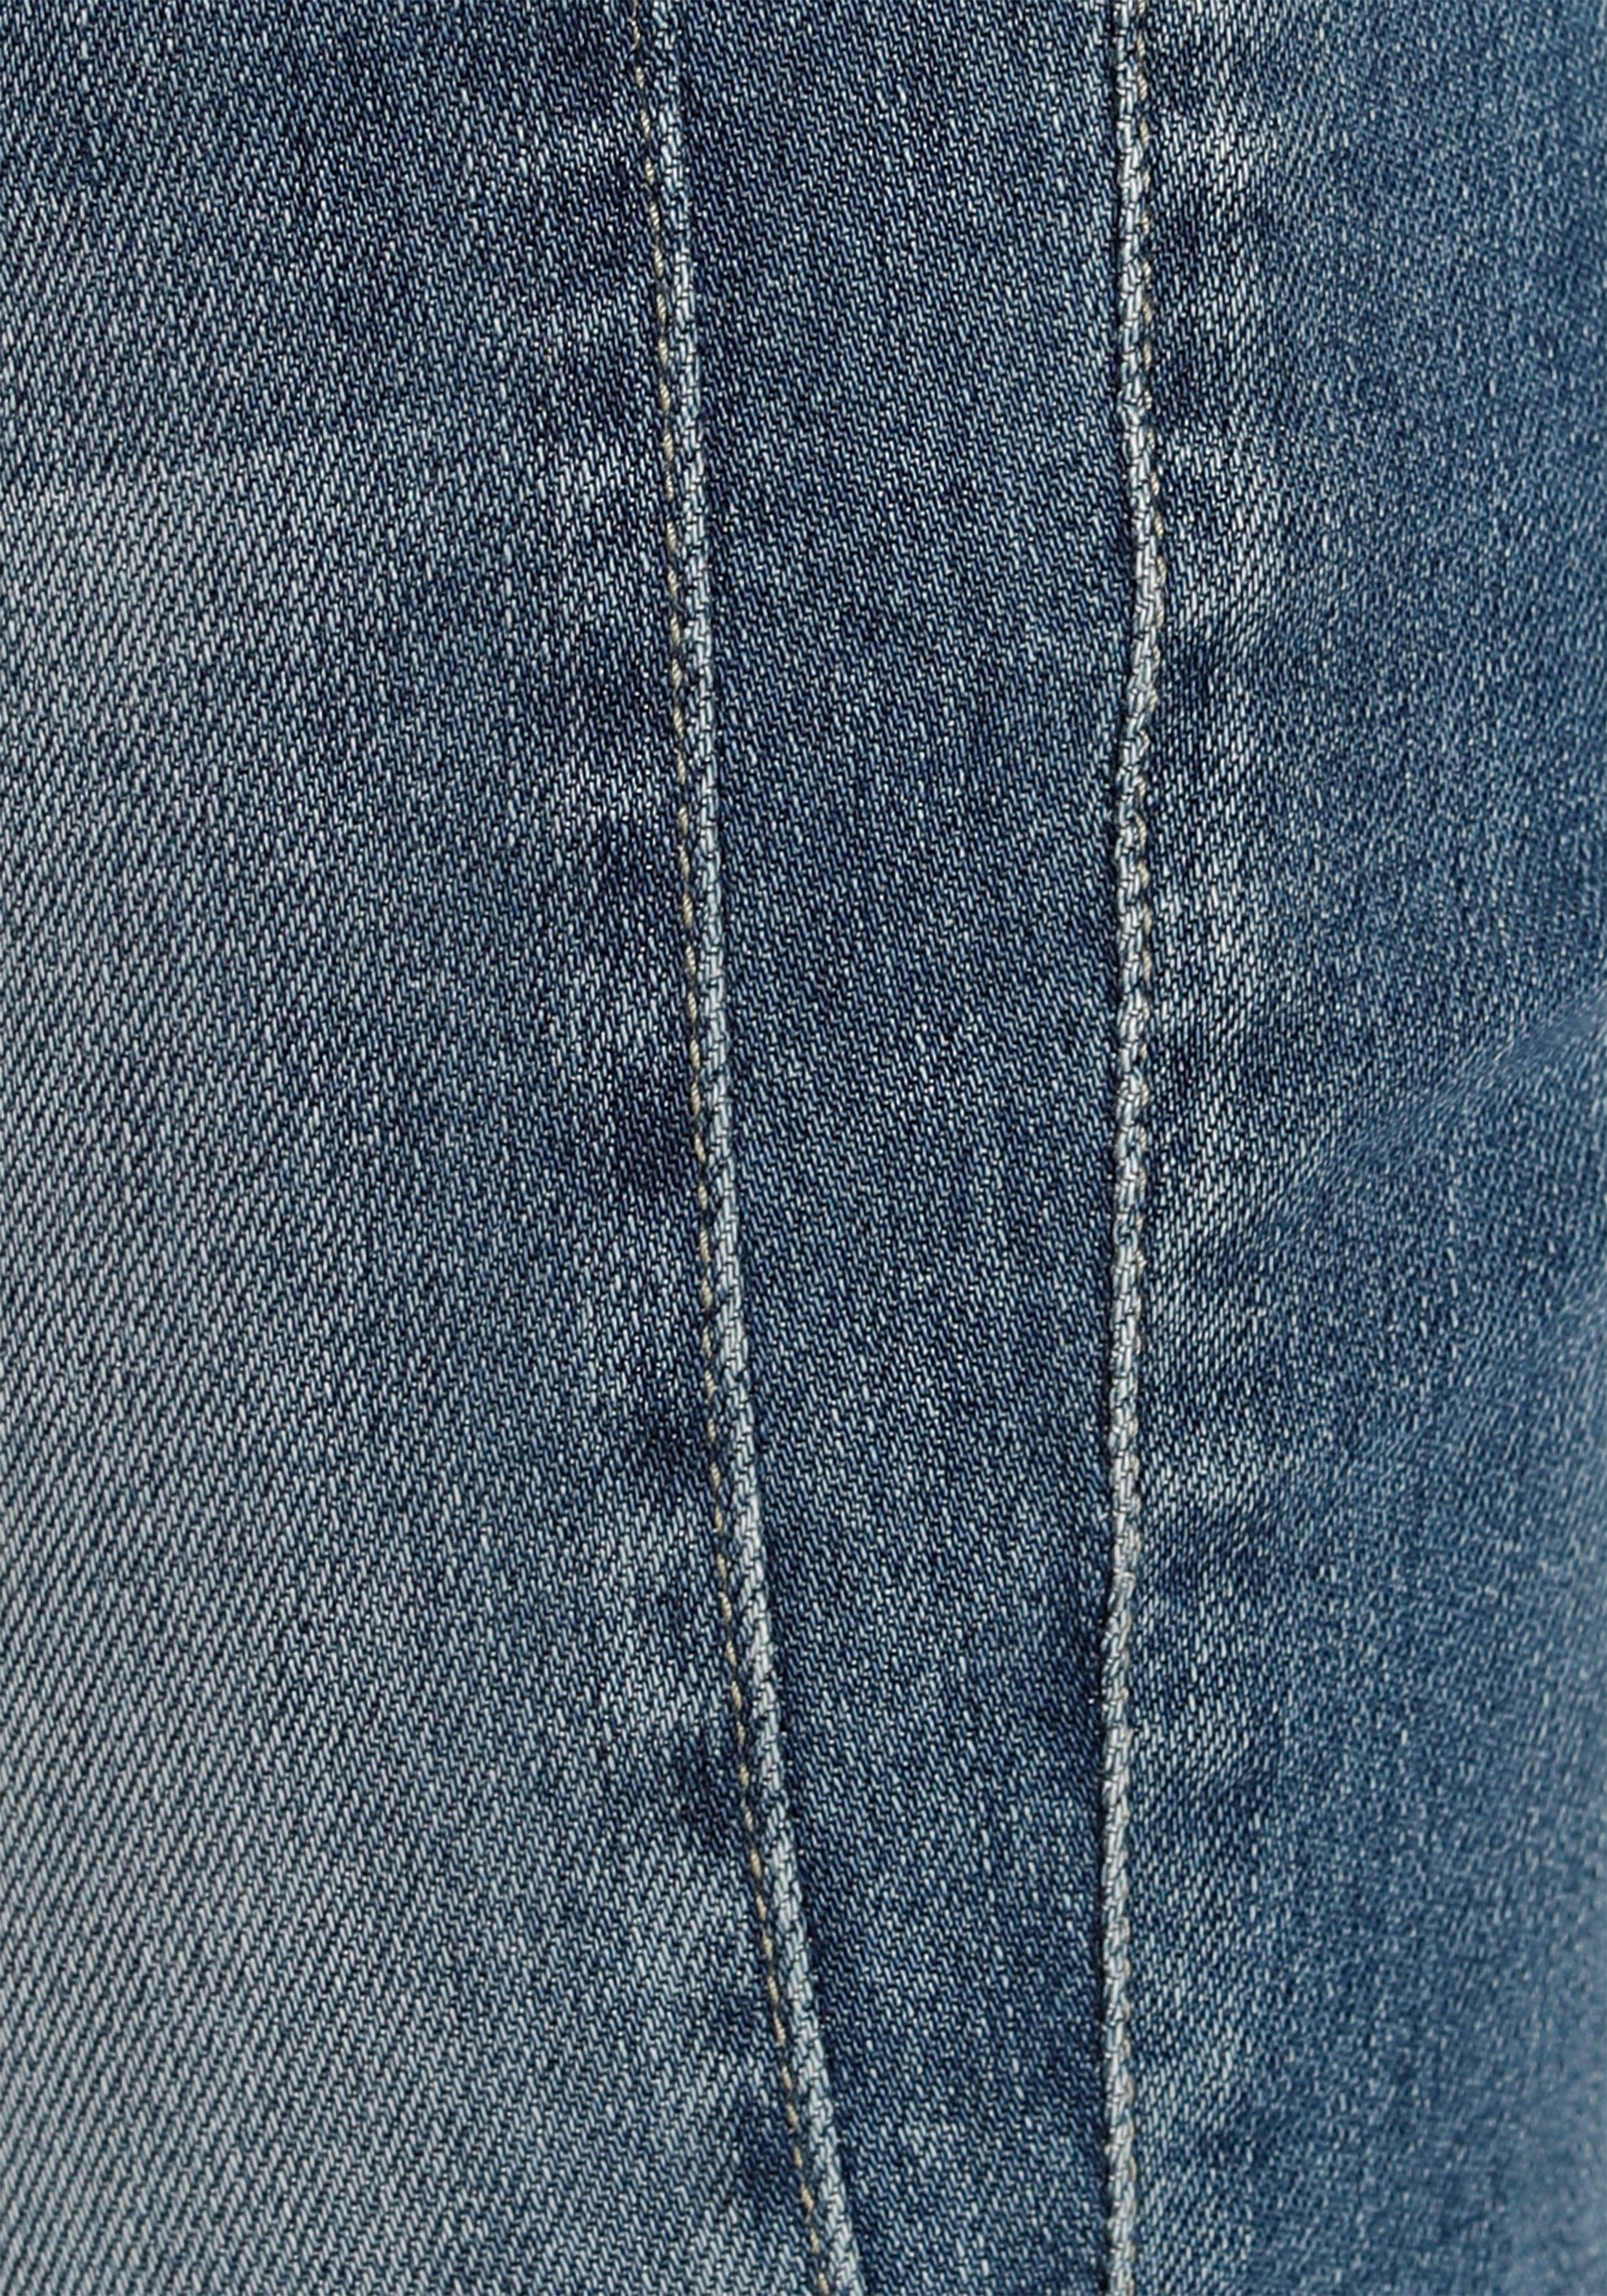 SLIM Kitotex DENIM umweltfreundlich Slim-fit-Jeans sea dank Technology GILA blue Herrlicher ORGANIC